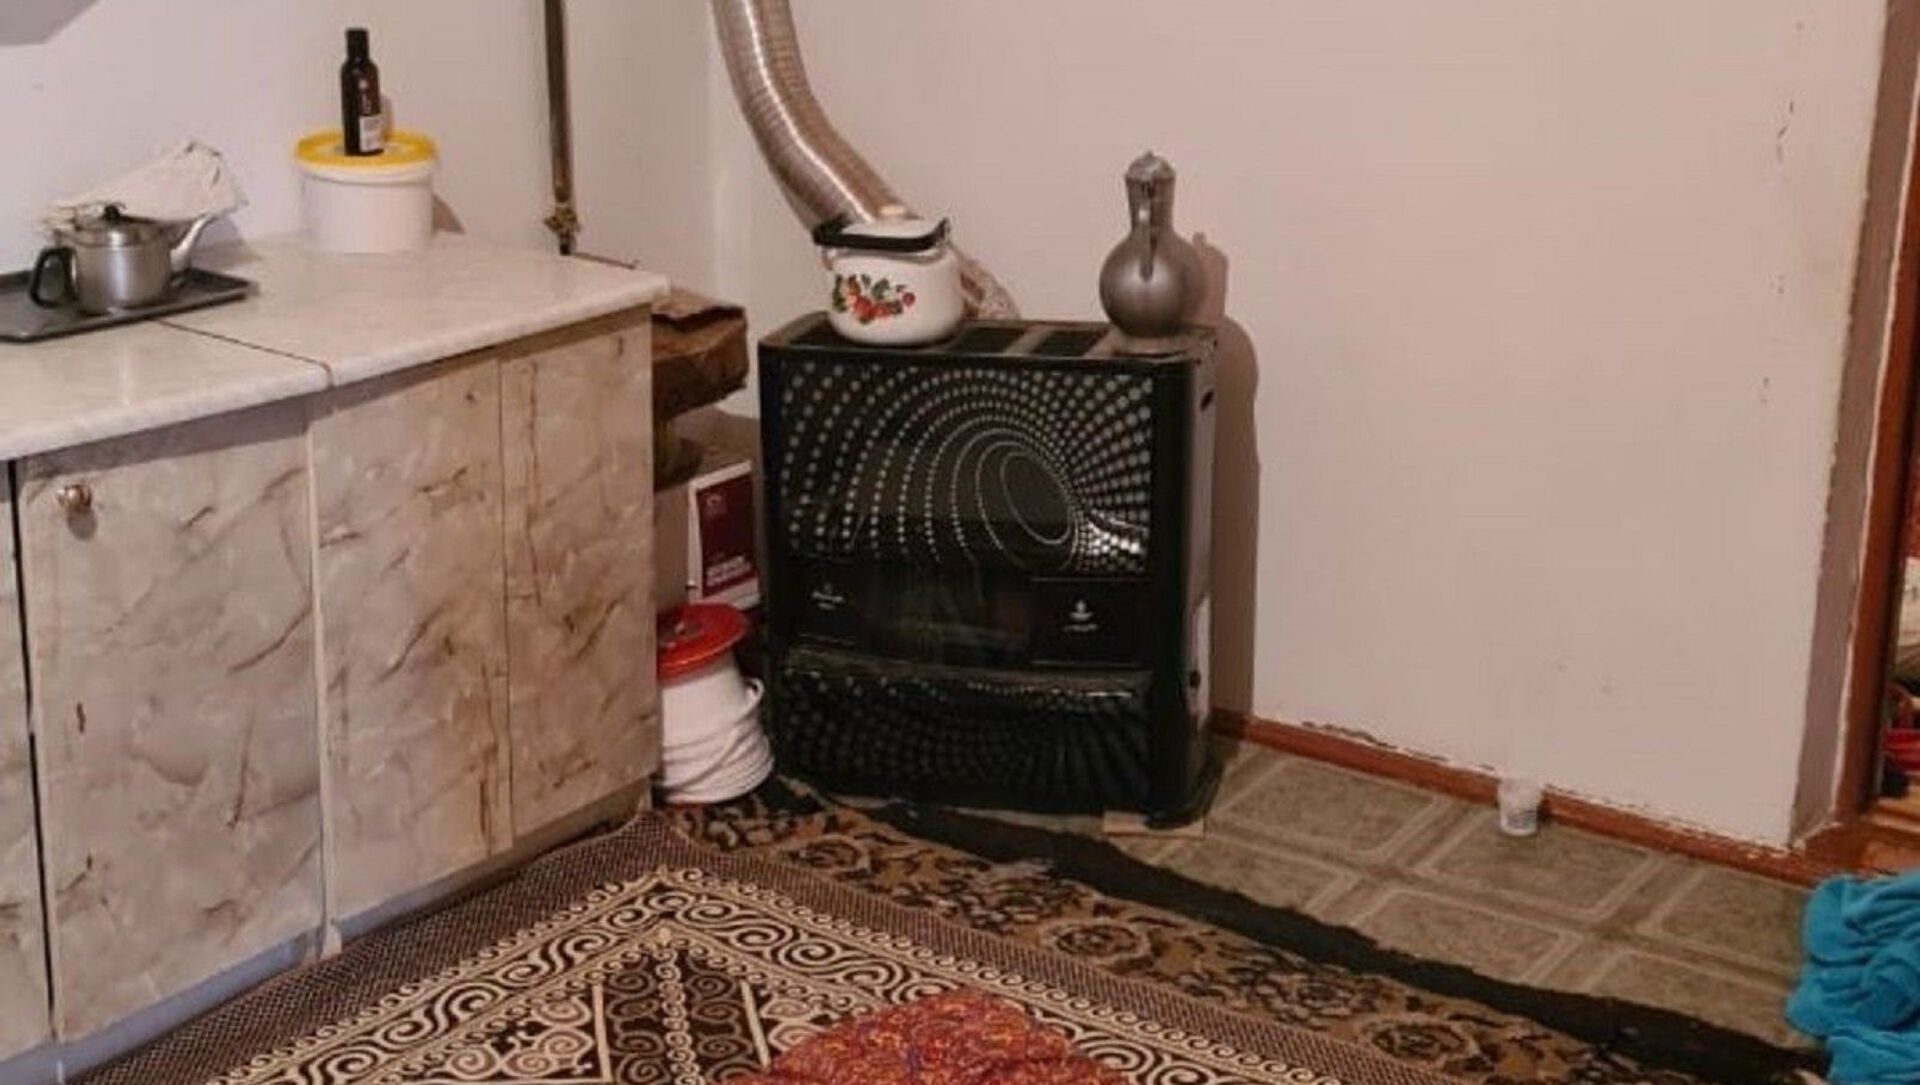 Газовое отопление в доме в Туркестане, где погибли пять человек - Sputnik Қазақстан, 1920, 28.02.2021